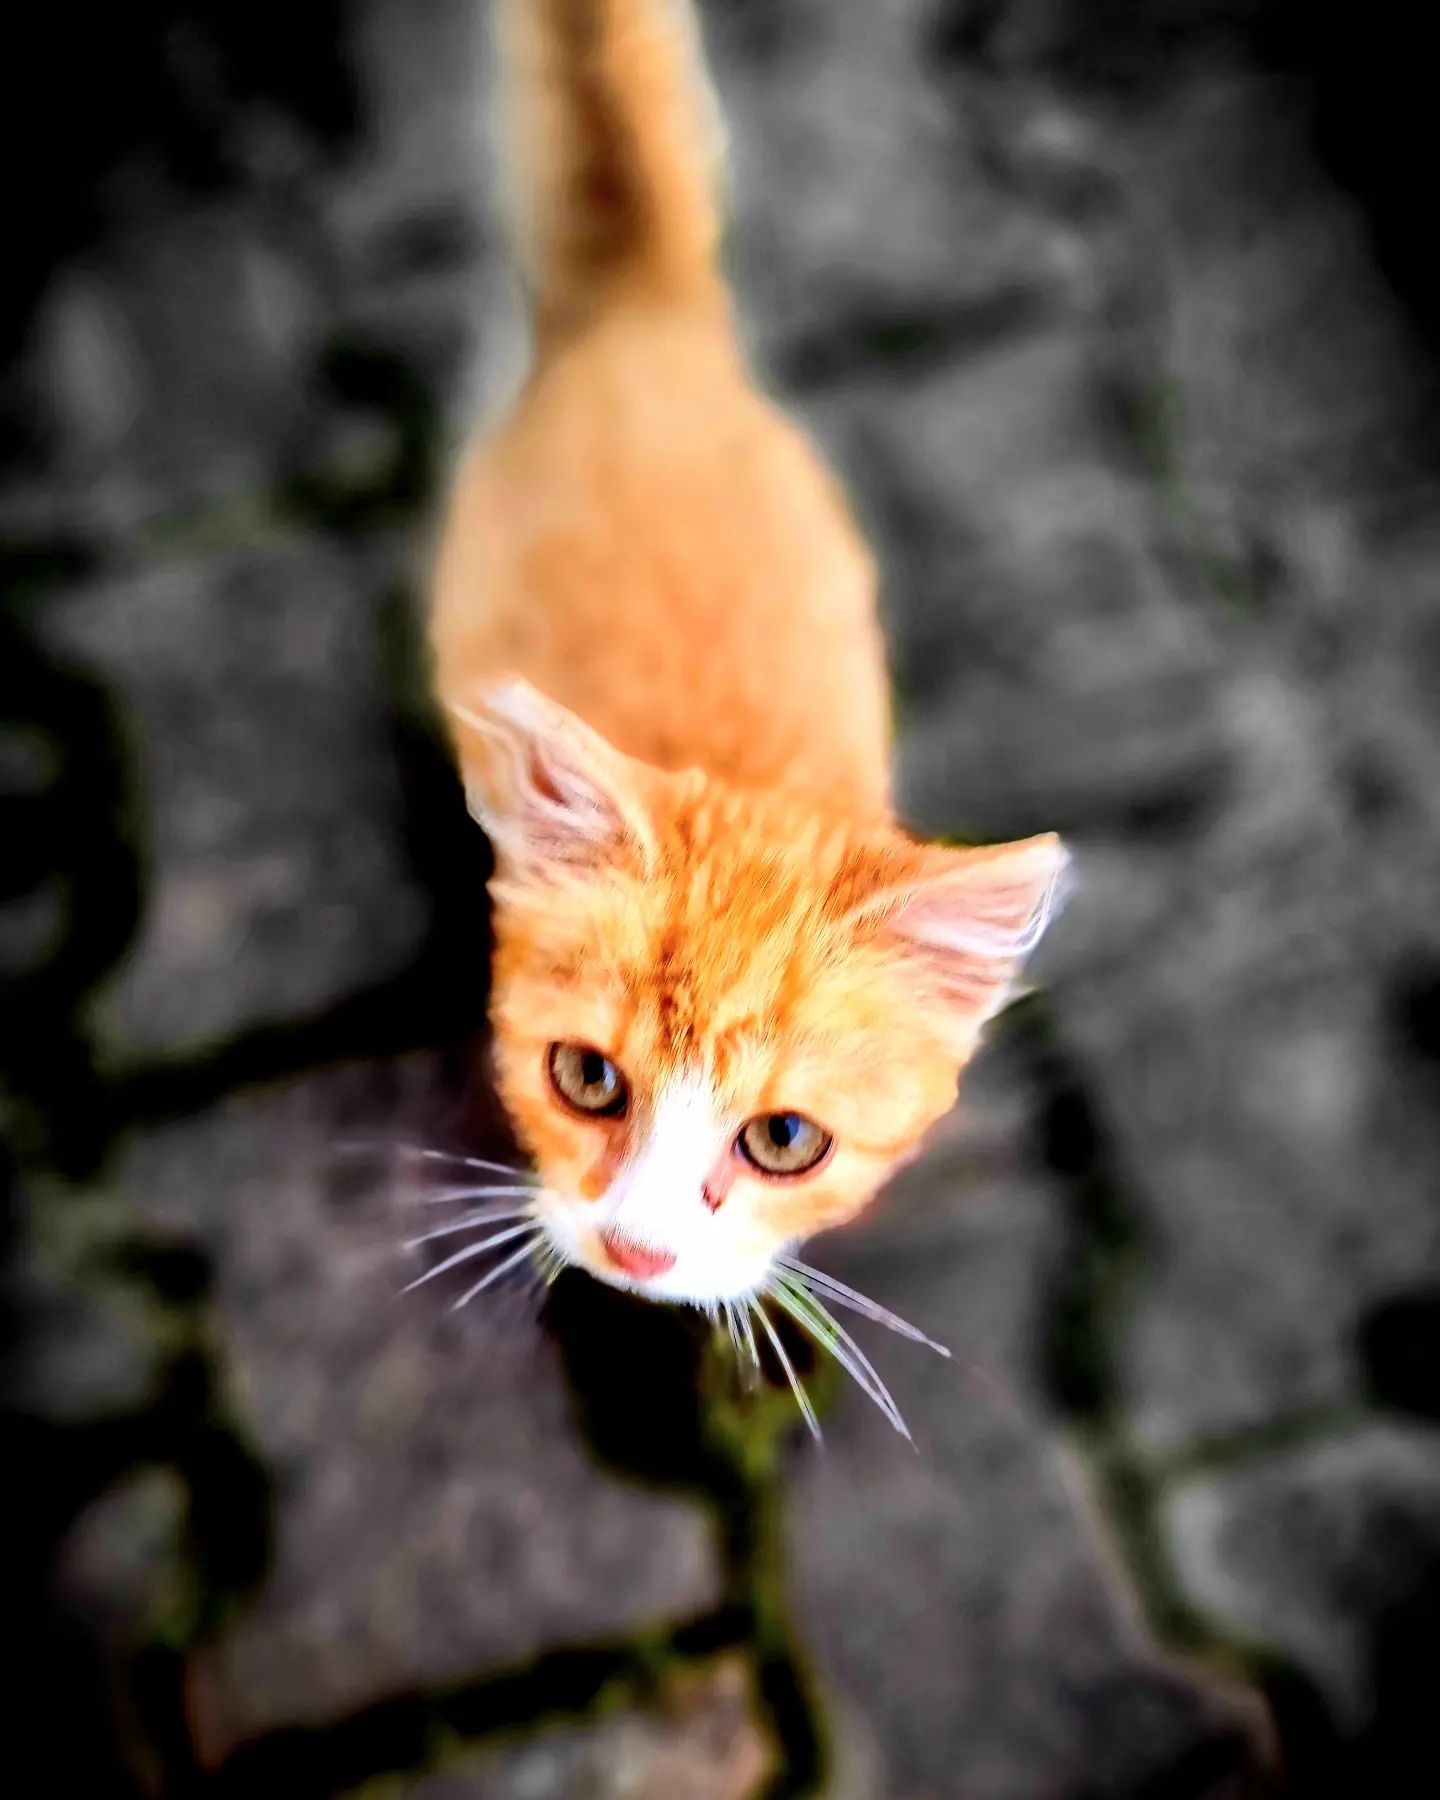 Kocourek Foxy 
P. S. Jsem rád, že mě máš! 😁♥️

#kote #kocourek😻 #catlovers #kocka